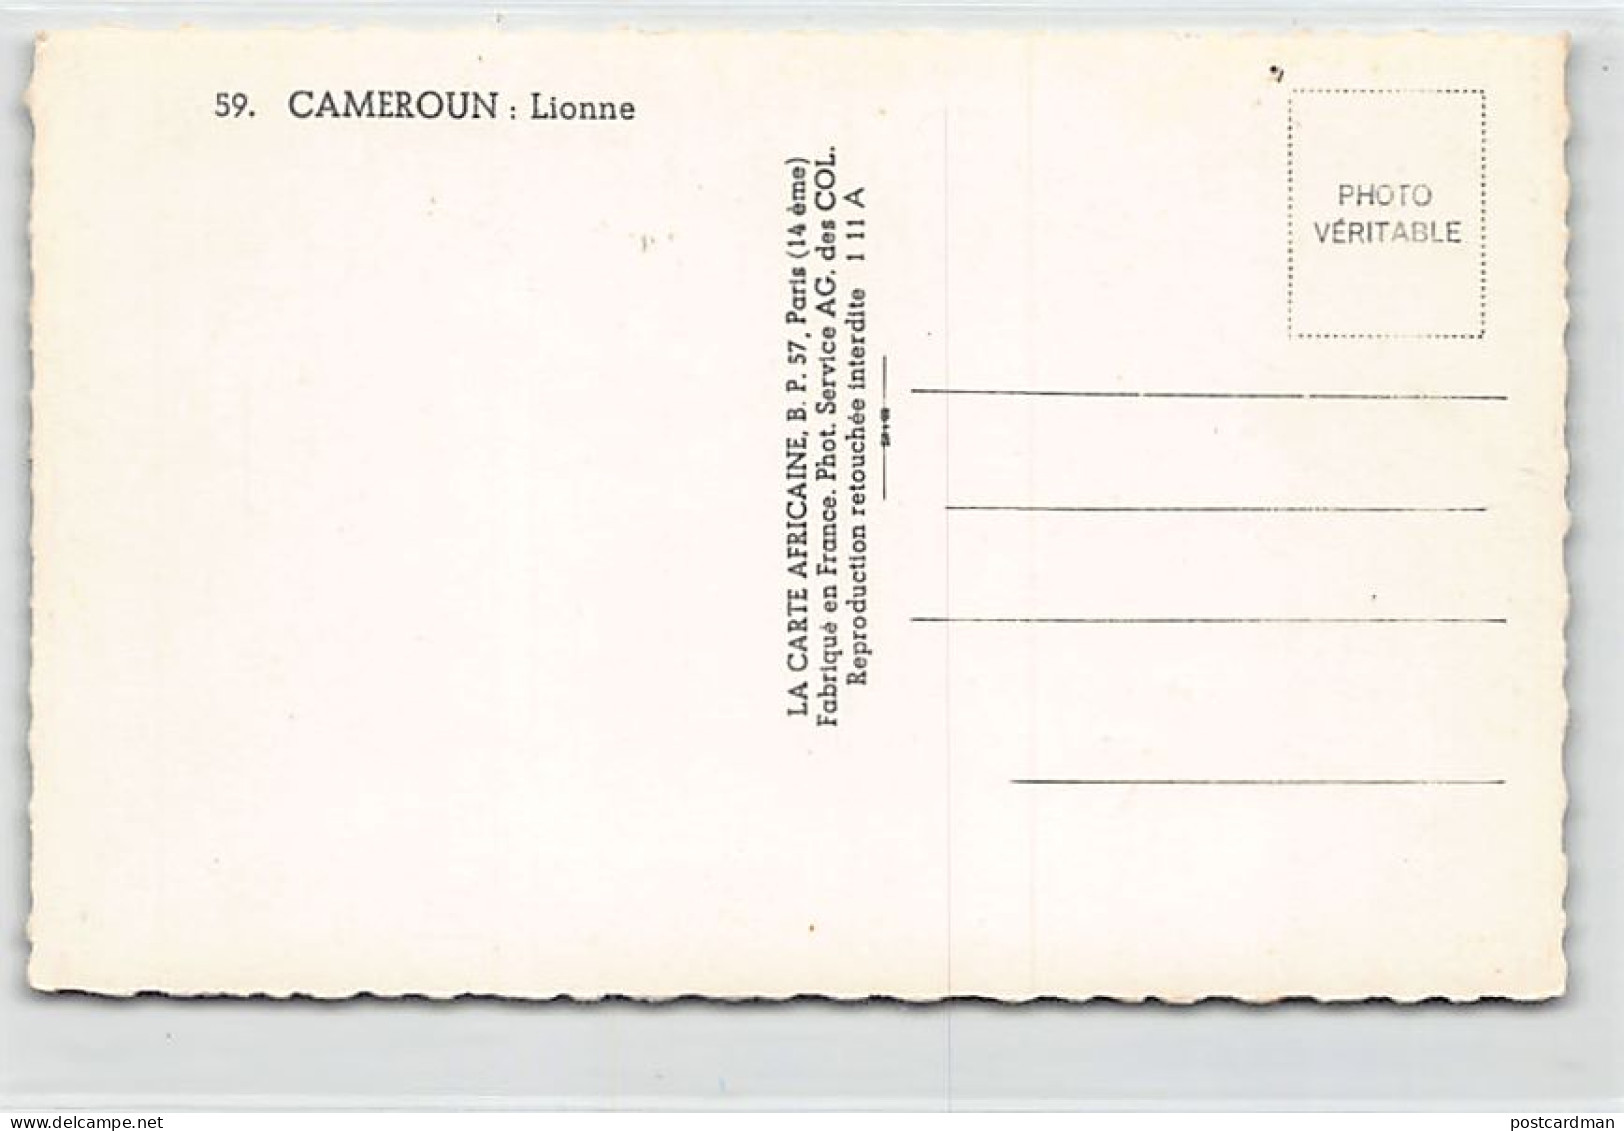 Cameroun - Lionne - Ed. La Carte Africaine 59 - Cameroon